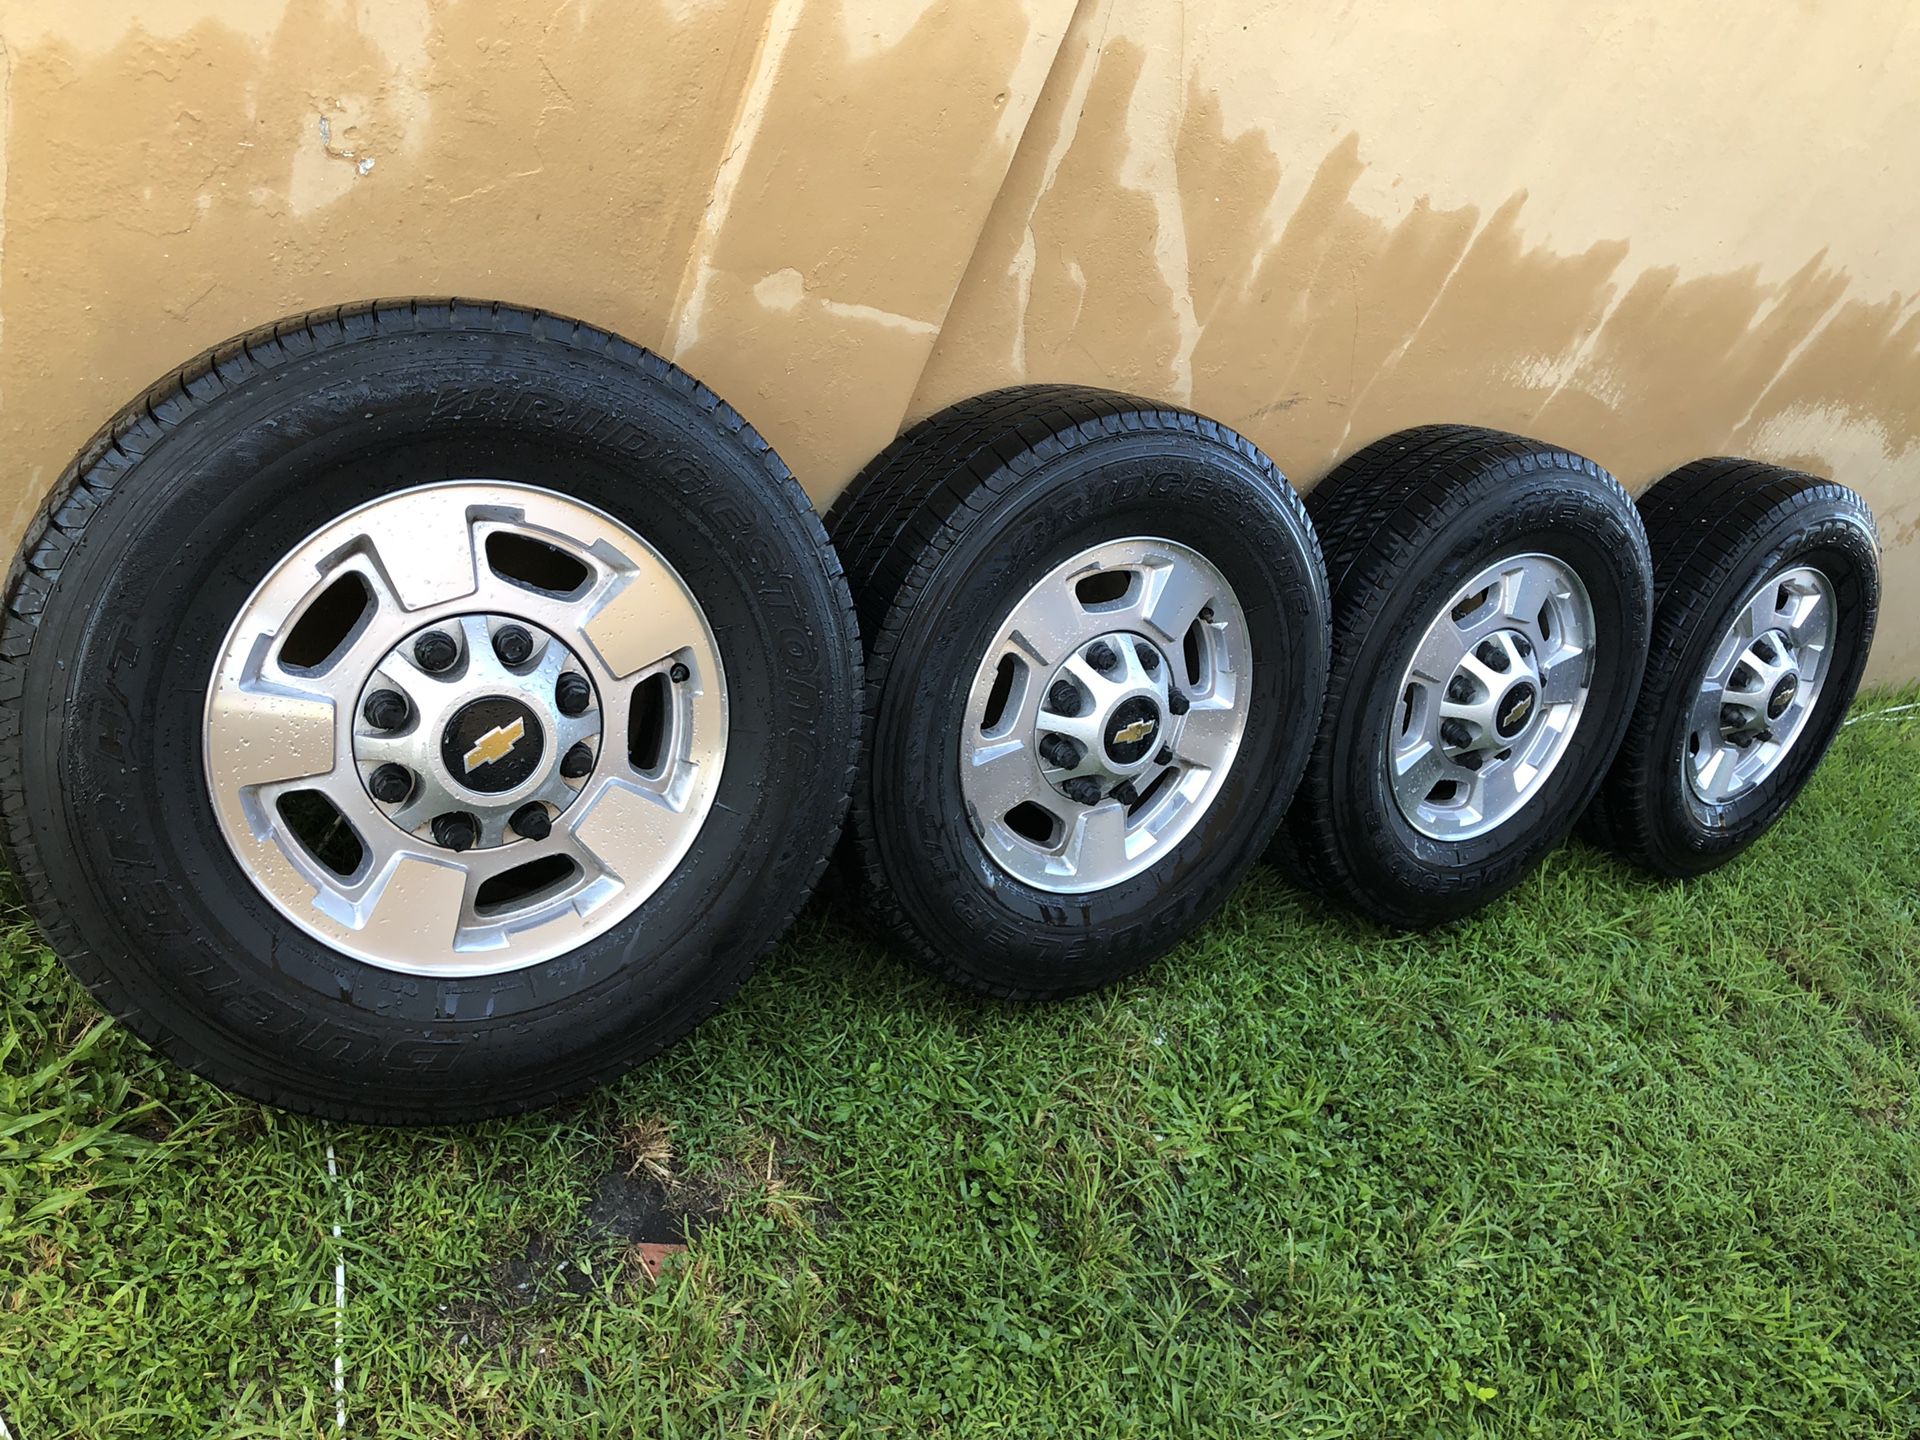 8 lug Chevy 2500 rims and Bridgestone tires LT 265/70r17